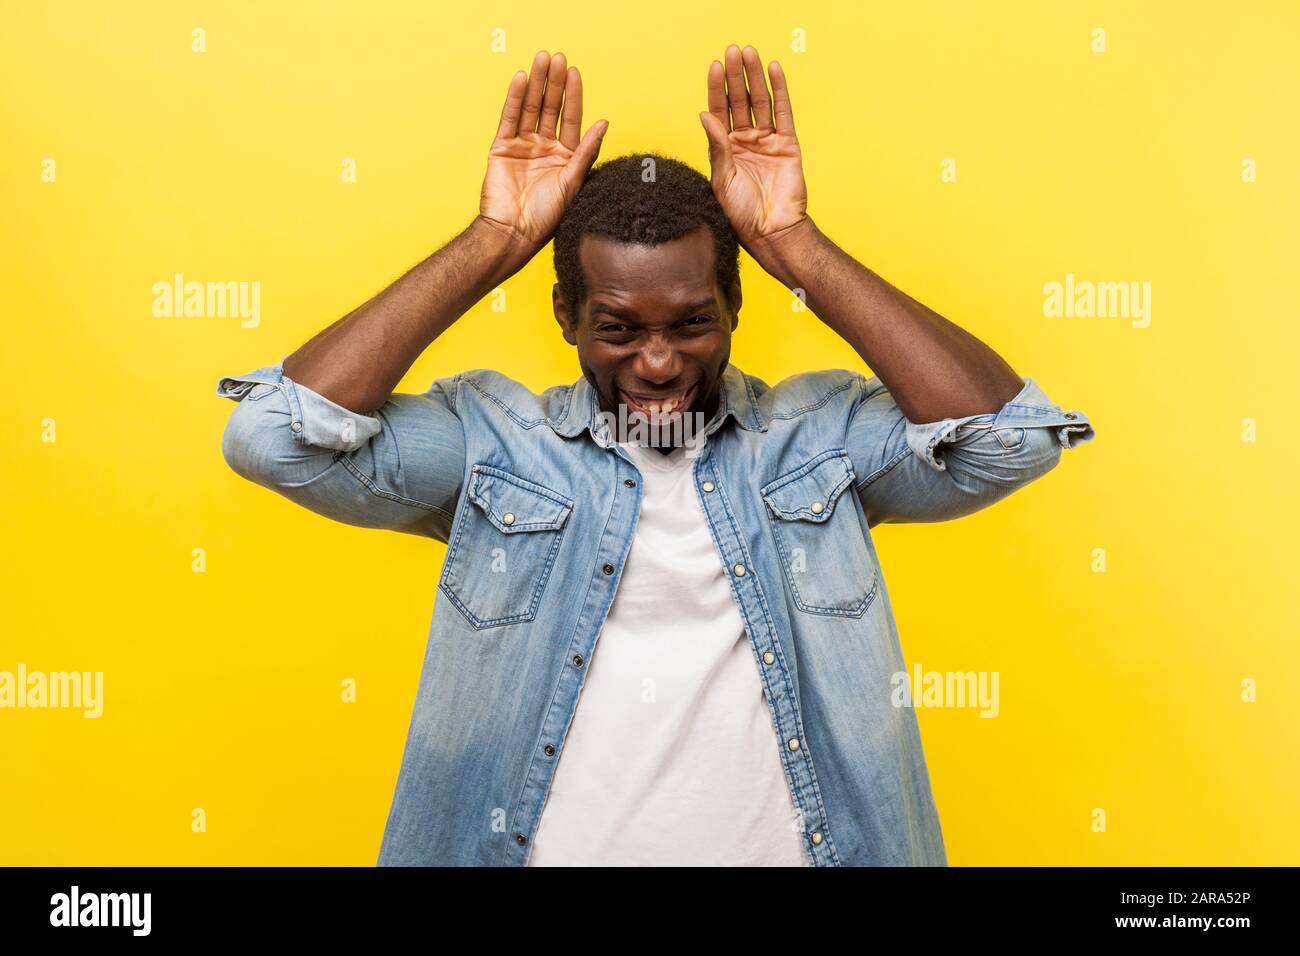 Porträt eines äußerst freudigen Mannes in Jeans-Casual-Hemd mit aufgerollten Ärmeln, die eine Geste mit knalligen Ohren zeigen und Spaß mit albern urkomischen Ausdrücken haben. Stockfoto